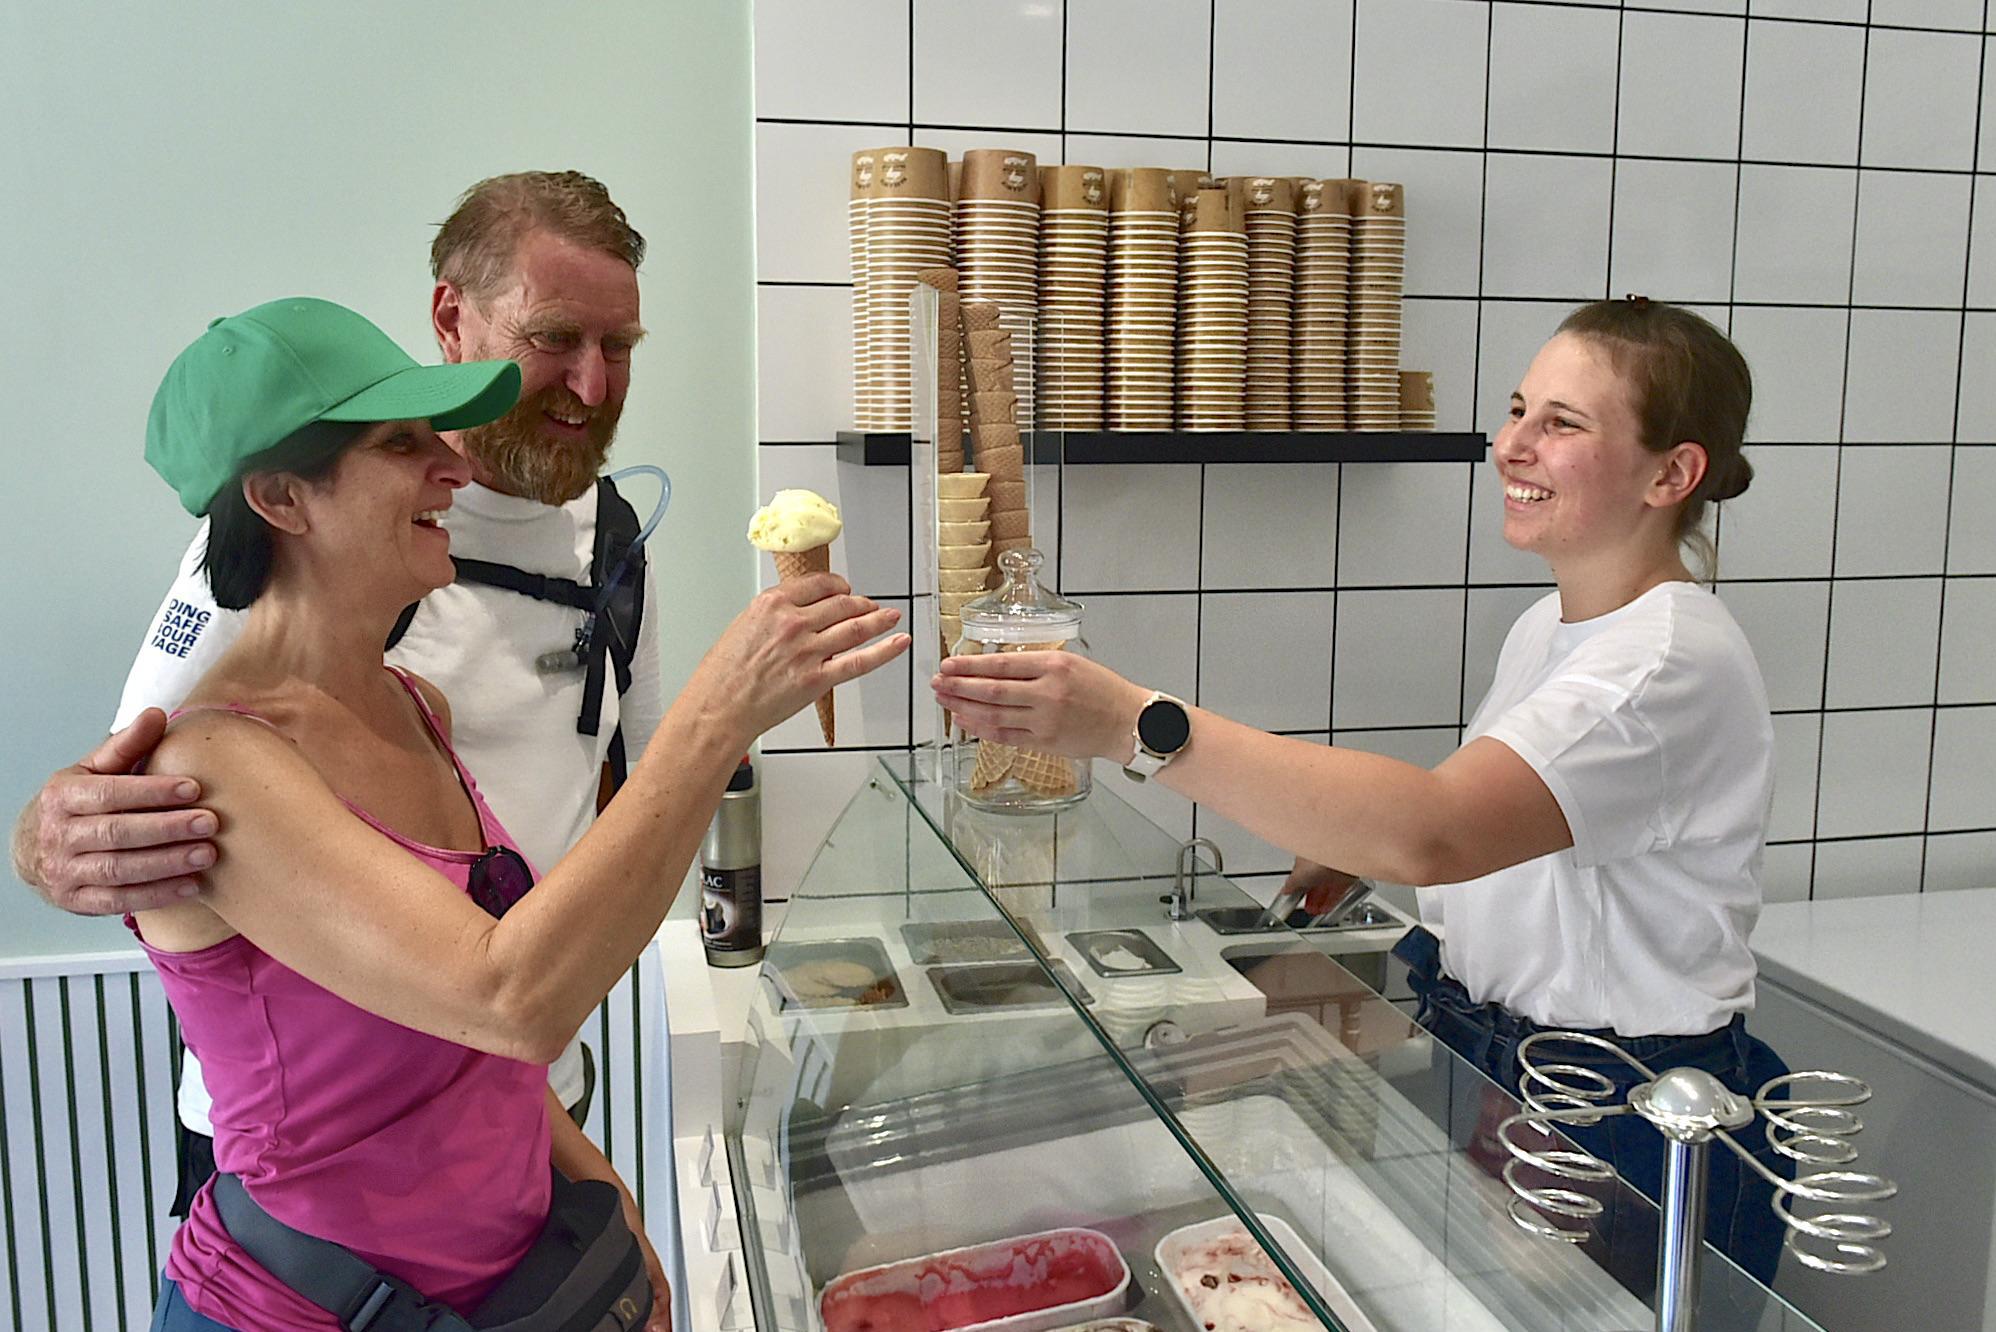 Femke (27 anni) apre una gelateria a Leest-dorp: “L’amore per fare il gelato è nel mio DNA” (Michellen)